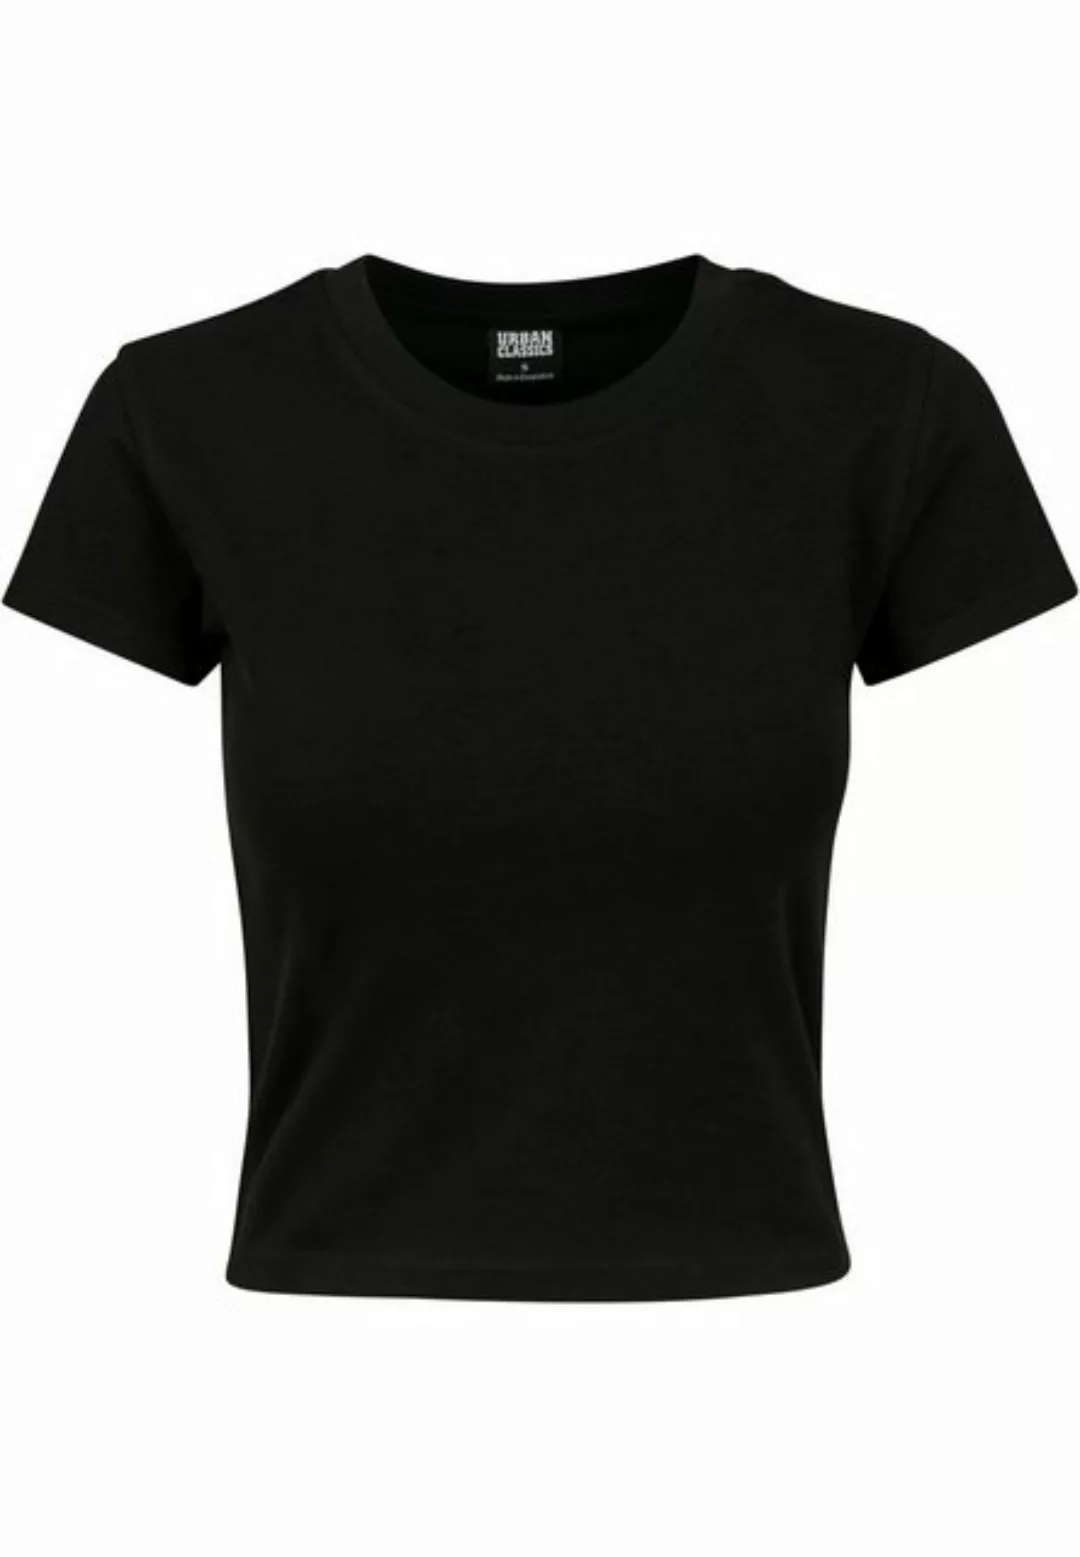 Urban Classics T-Shirt LADIES STRETCH JERSEY CROPPED TEE TB2754 Schwarz Bla günstig online kaufen